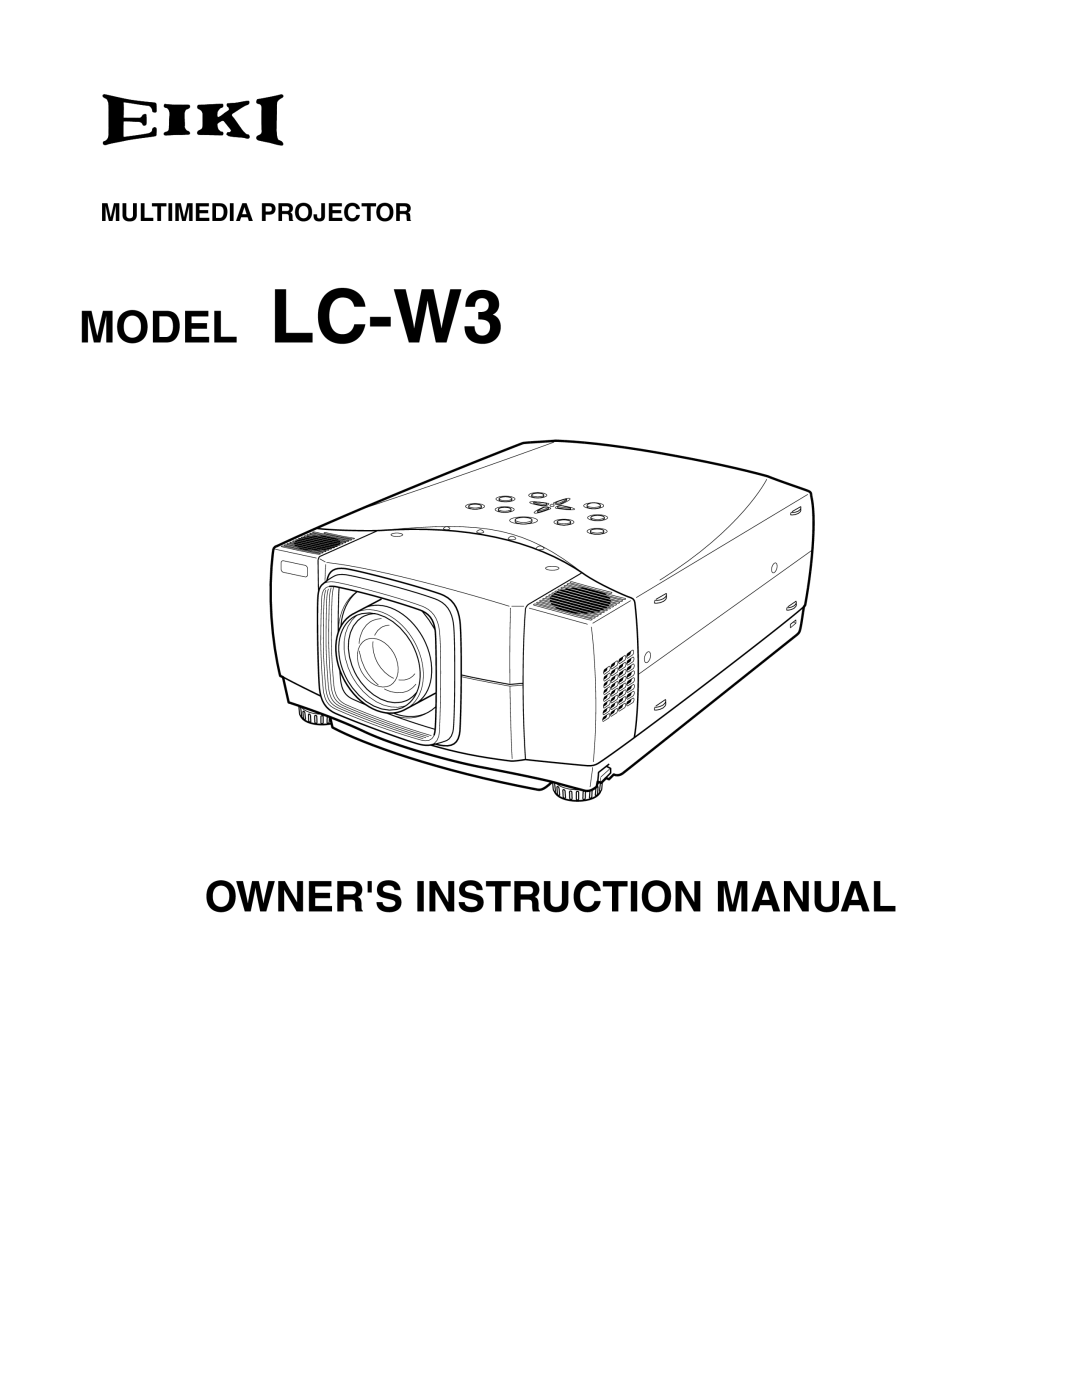 Eiki instruction manual MODEL LC-W3 